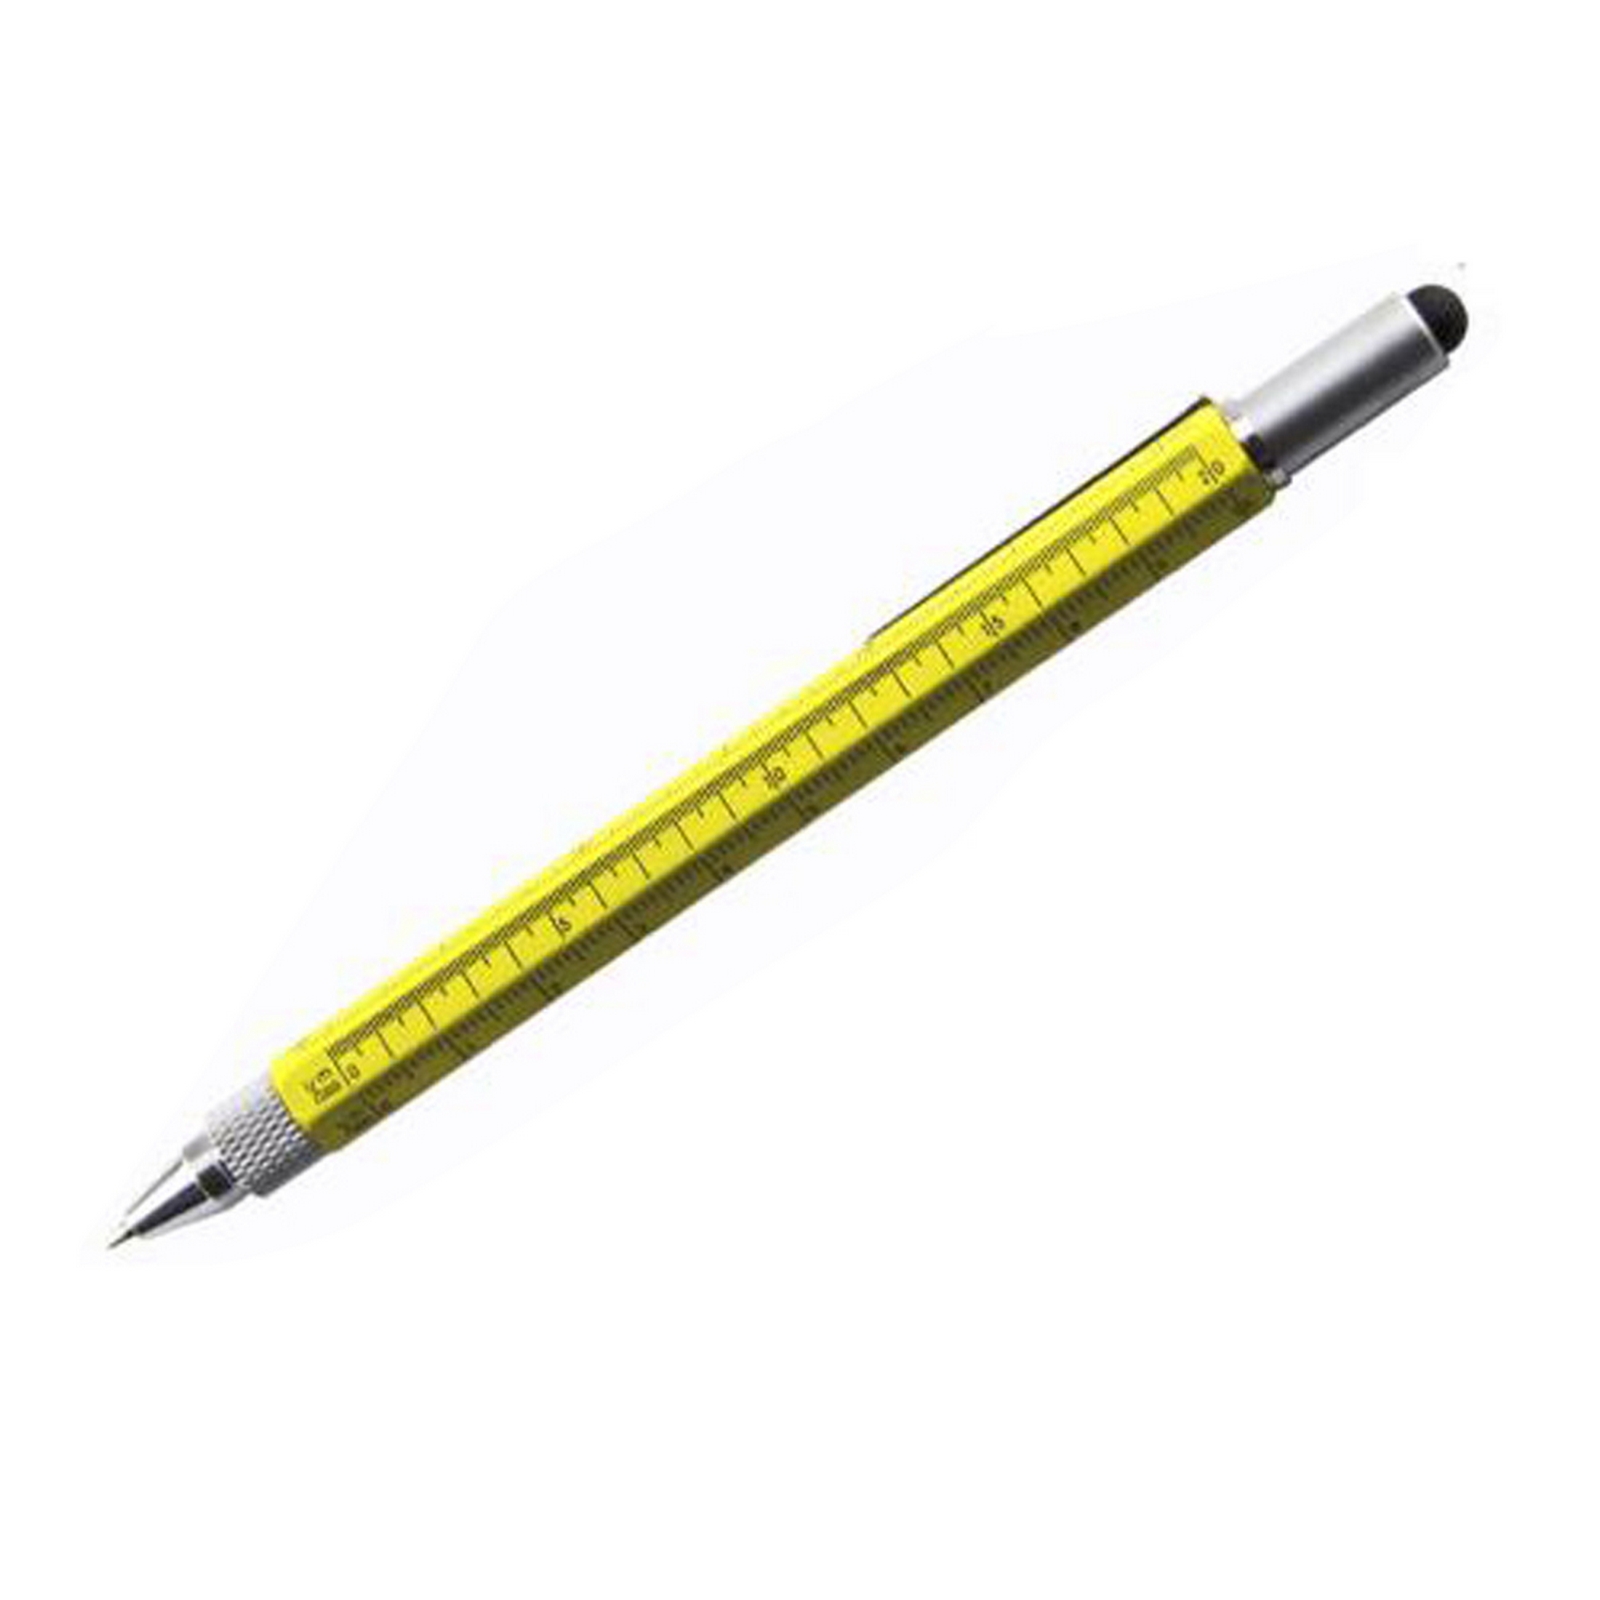 6-in-1 Tool Stylus Pen